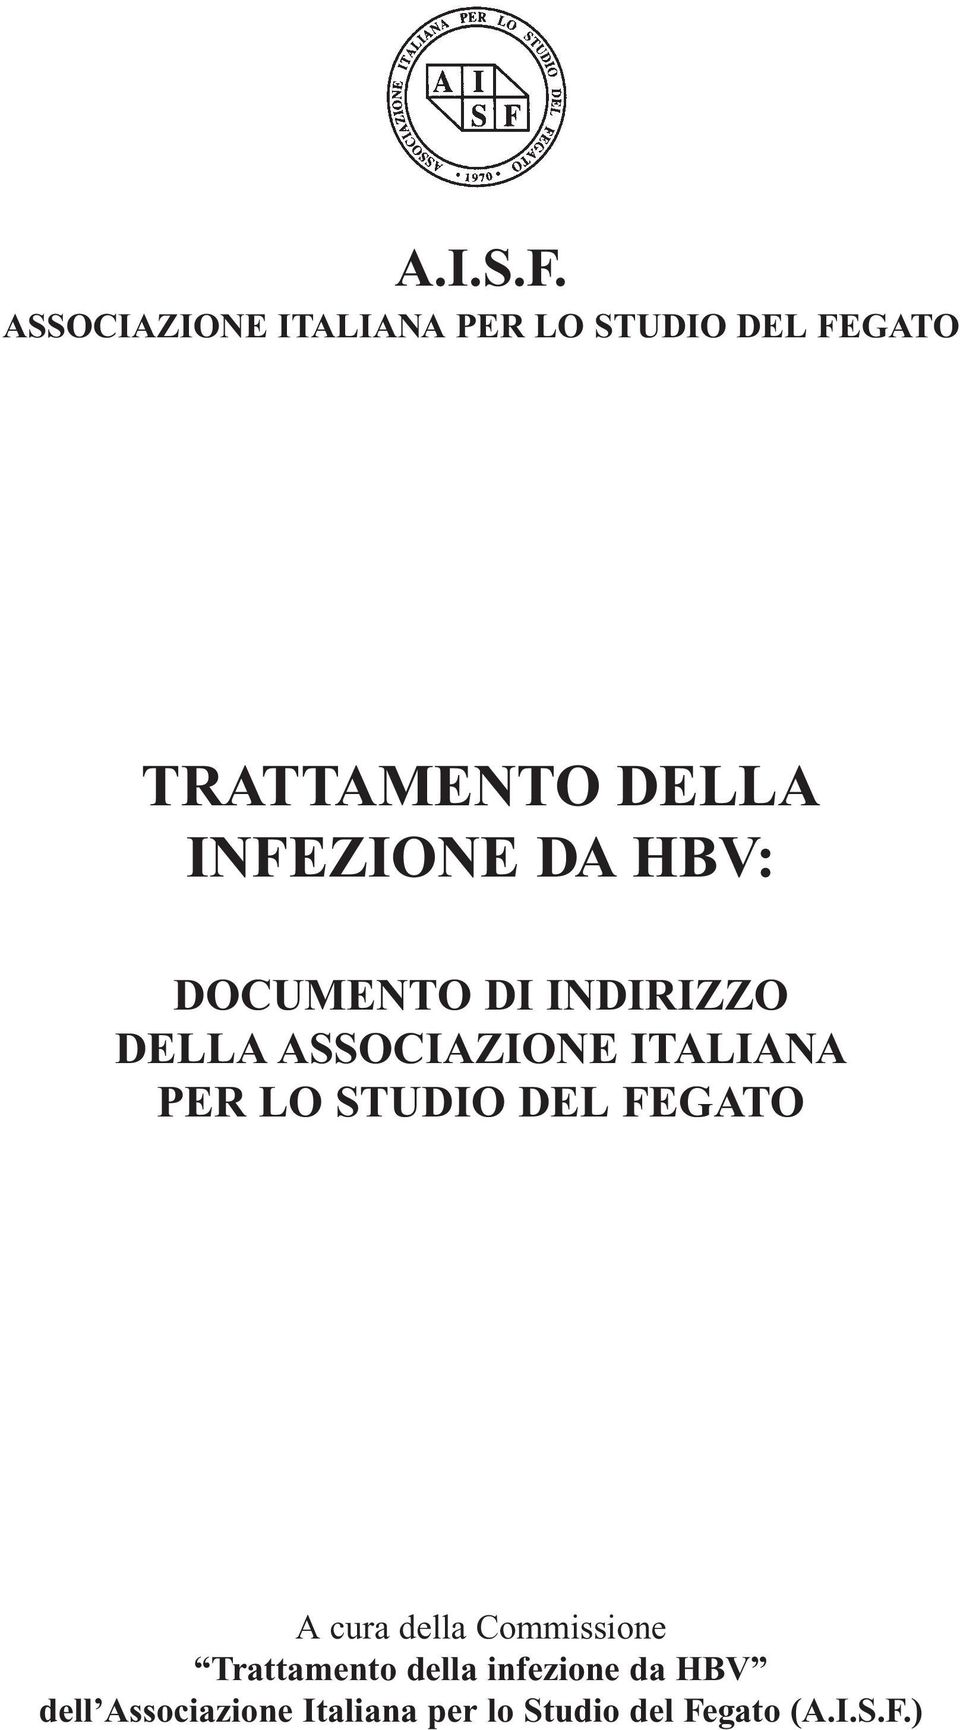 INFEZIONE DA HBV: DOCUMENTO DI INDIRIZZO DELLA ASSOCIAZIONE ITALIANA PER